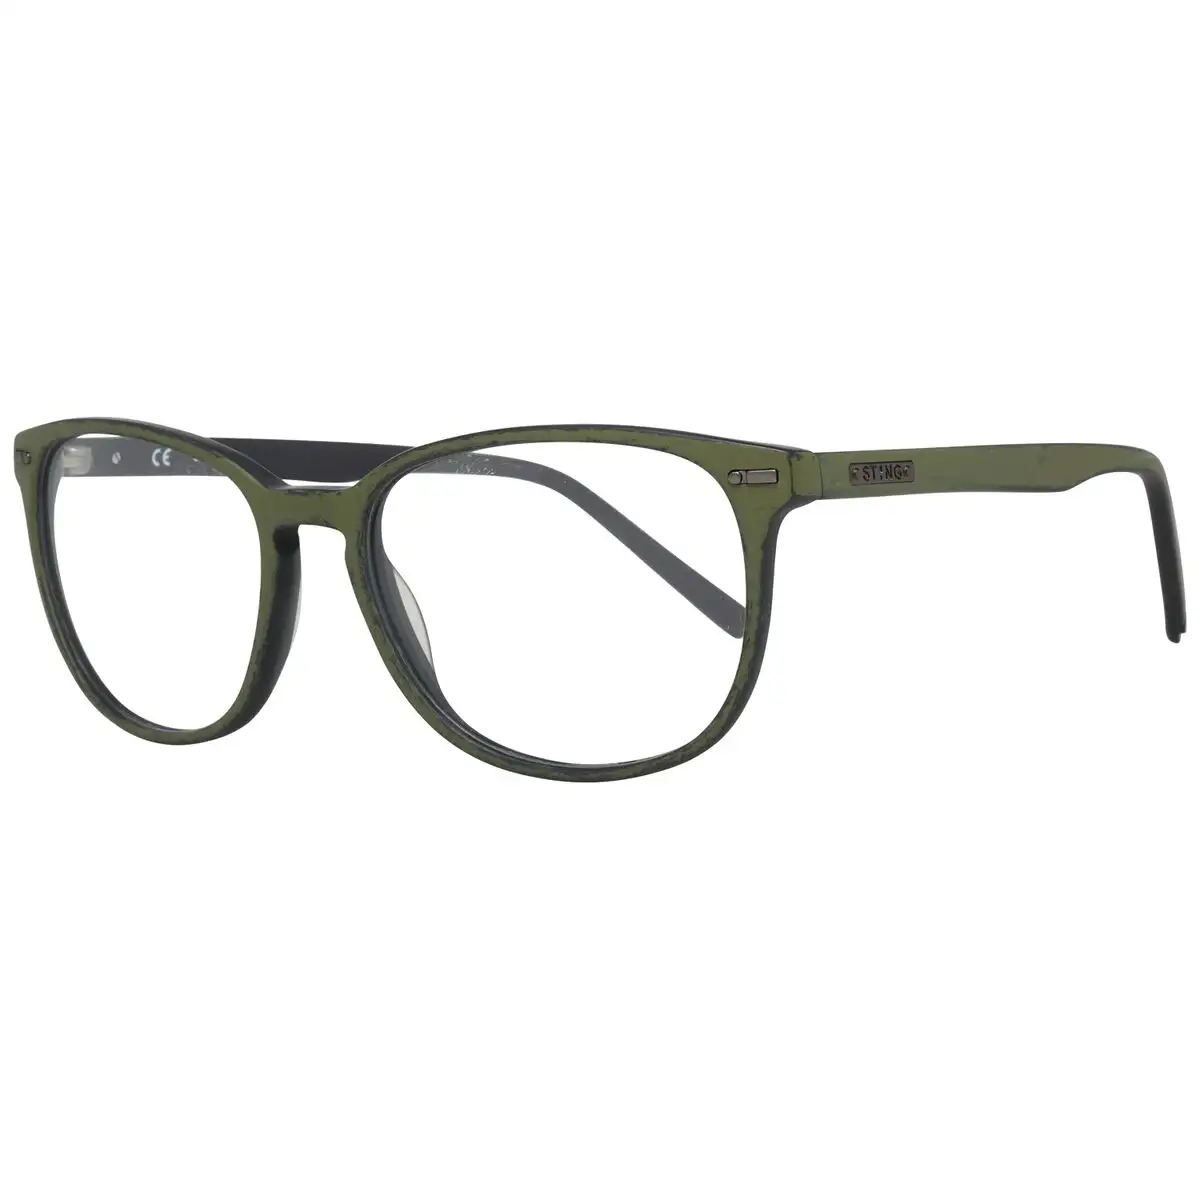 Monture de lunettes unisexe sting vst040 536x3m_1700. DIAYTAR SENEGAL - Votre Destination Shopping de Confiance. Naviguez à travers notre boutique en ligne et profitez d'une sélection soigneusement choisie de produits qui répondent à toutes vos exigences.